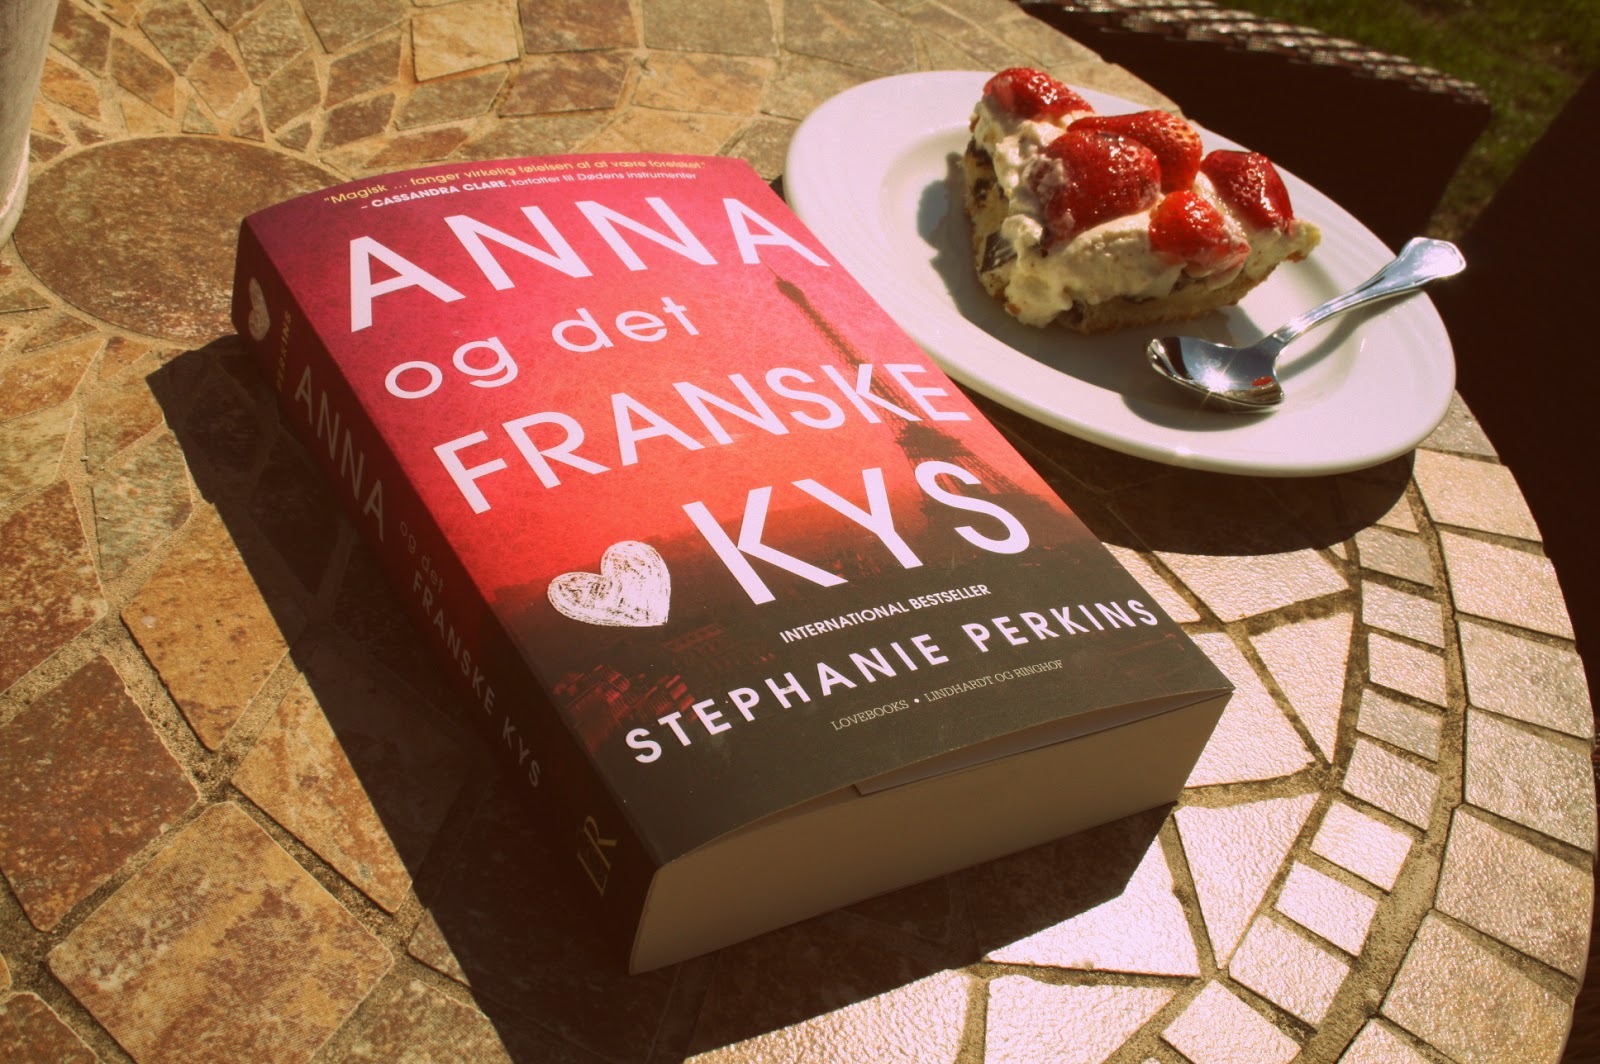 Anna og det franske kys af Stephanie Perkins